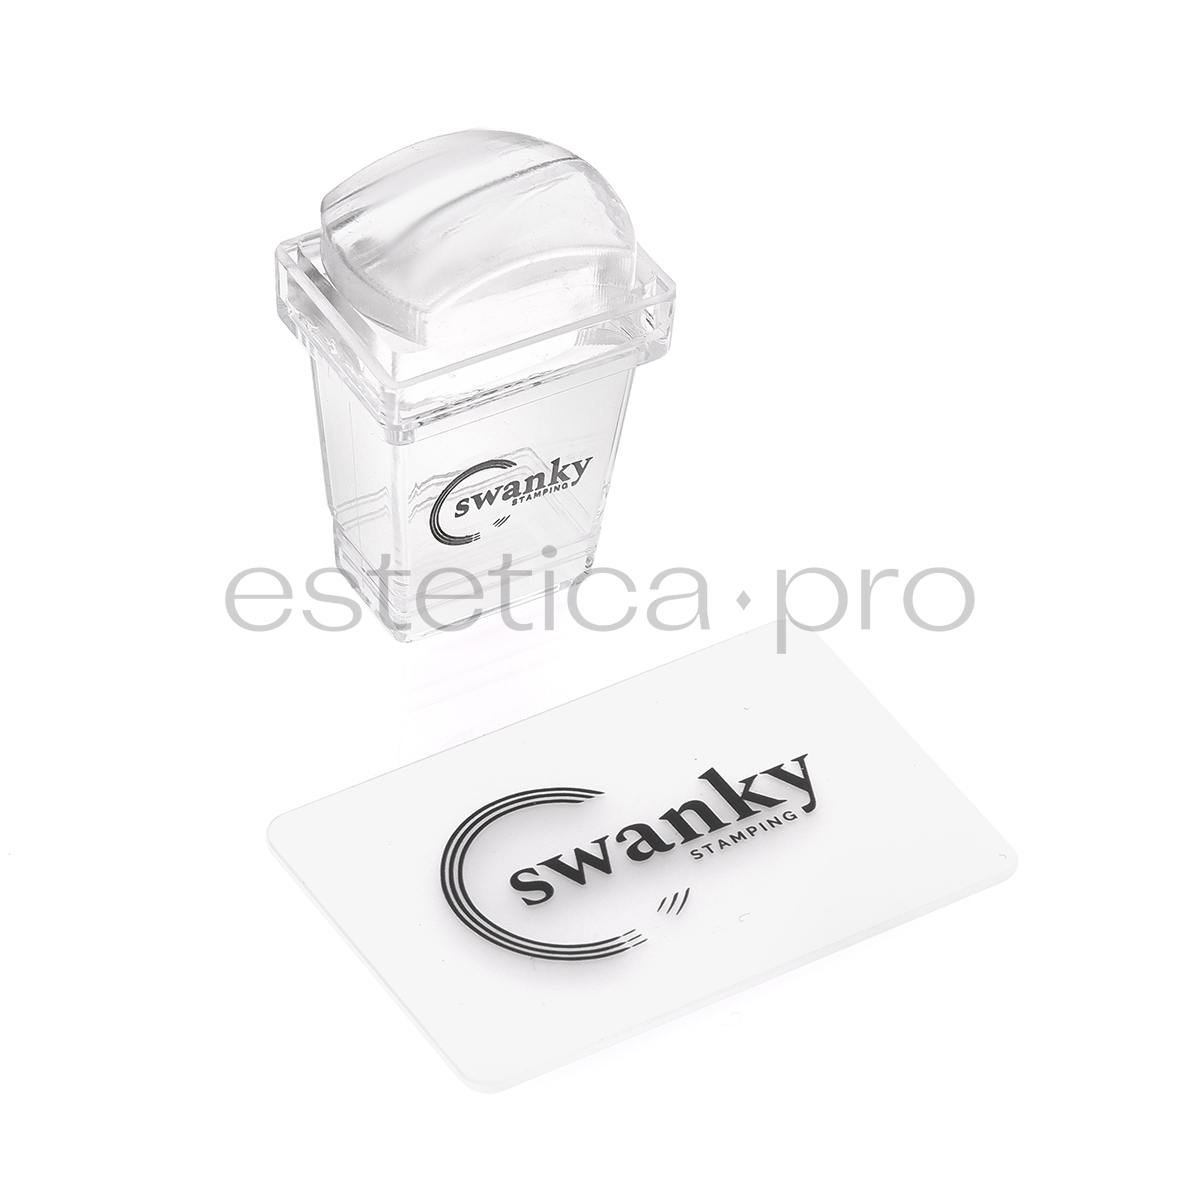 Штамп Swanky Stamping прозрачный, силиконовый, прямоугольный, высокий 2*3 см.